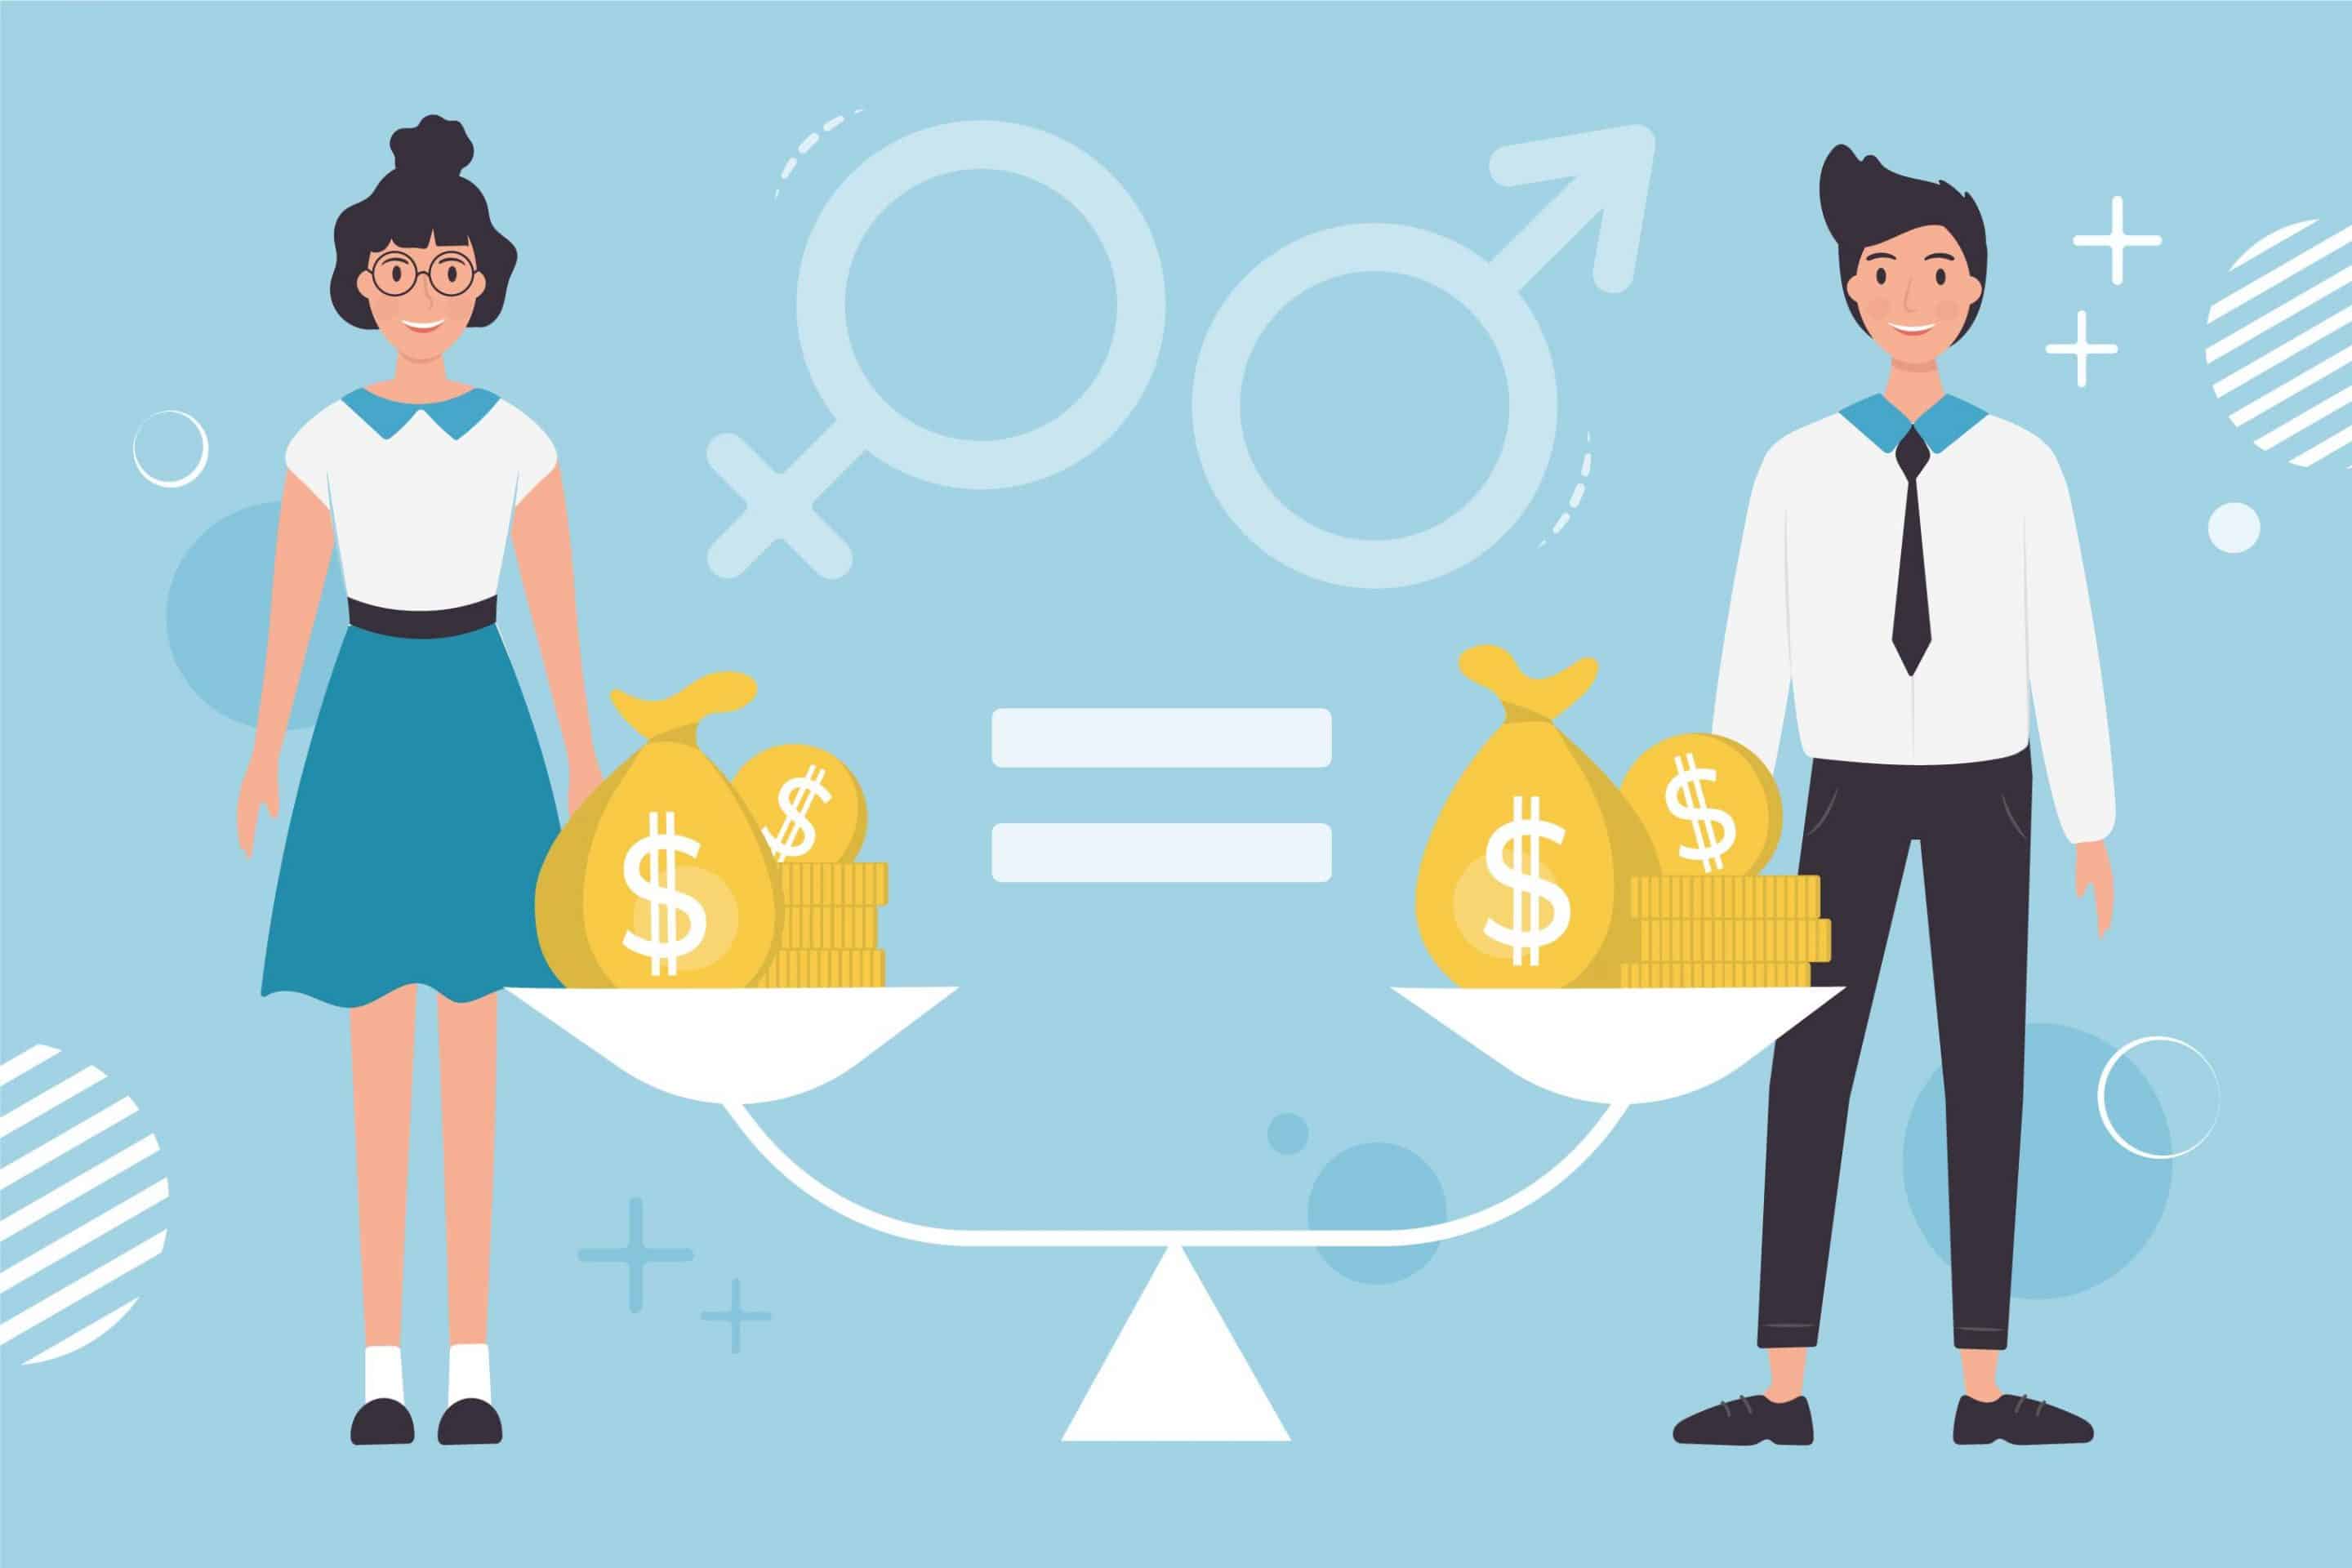 Hacia la superación de la brecha salarial de género